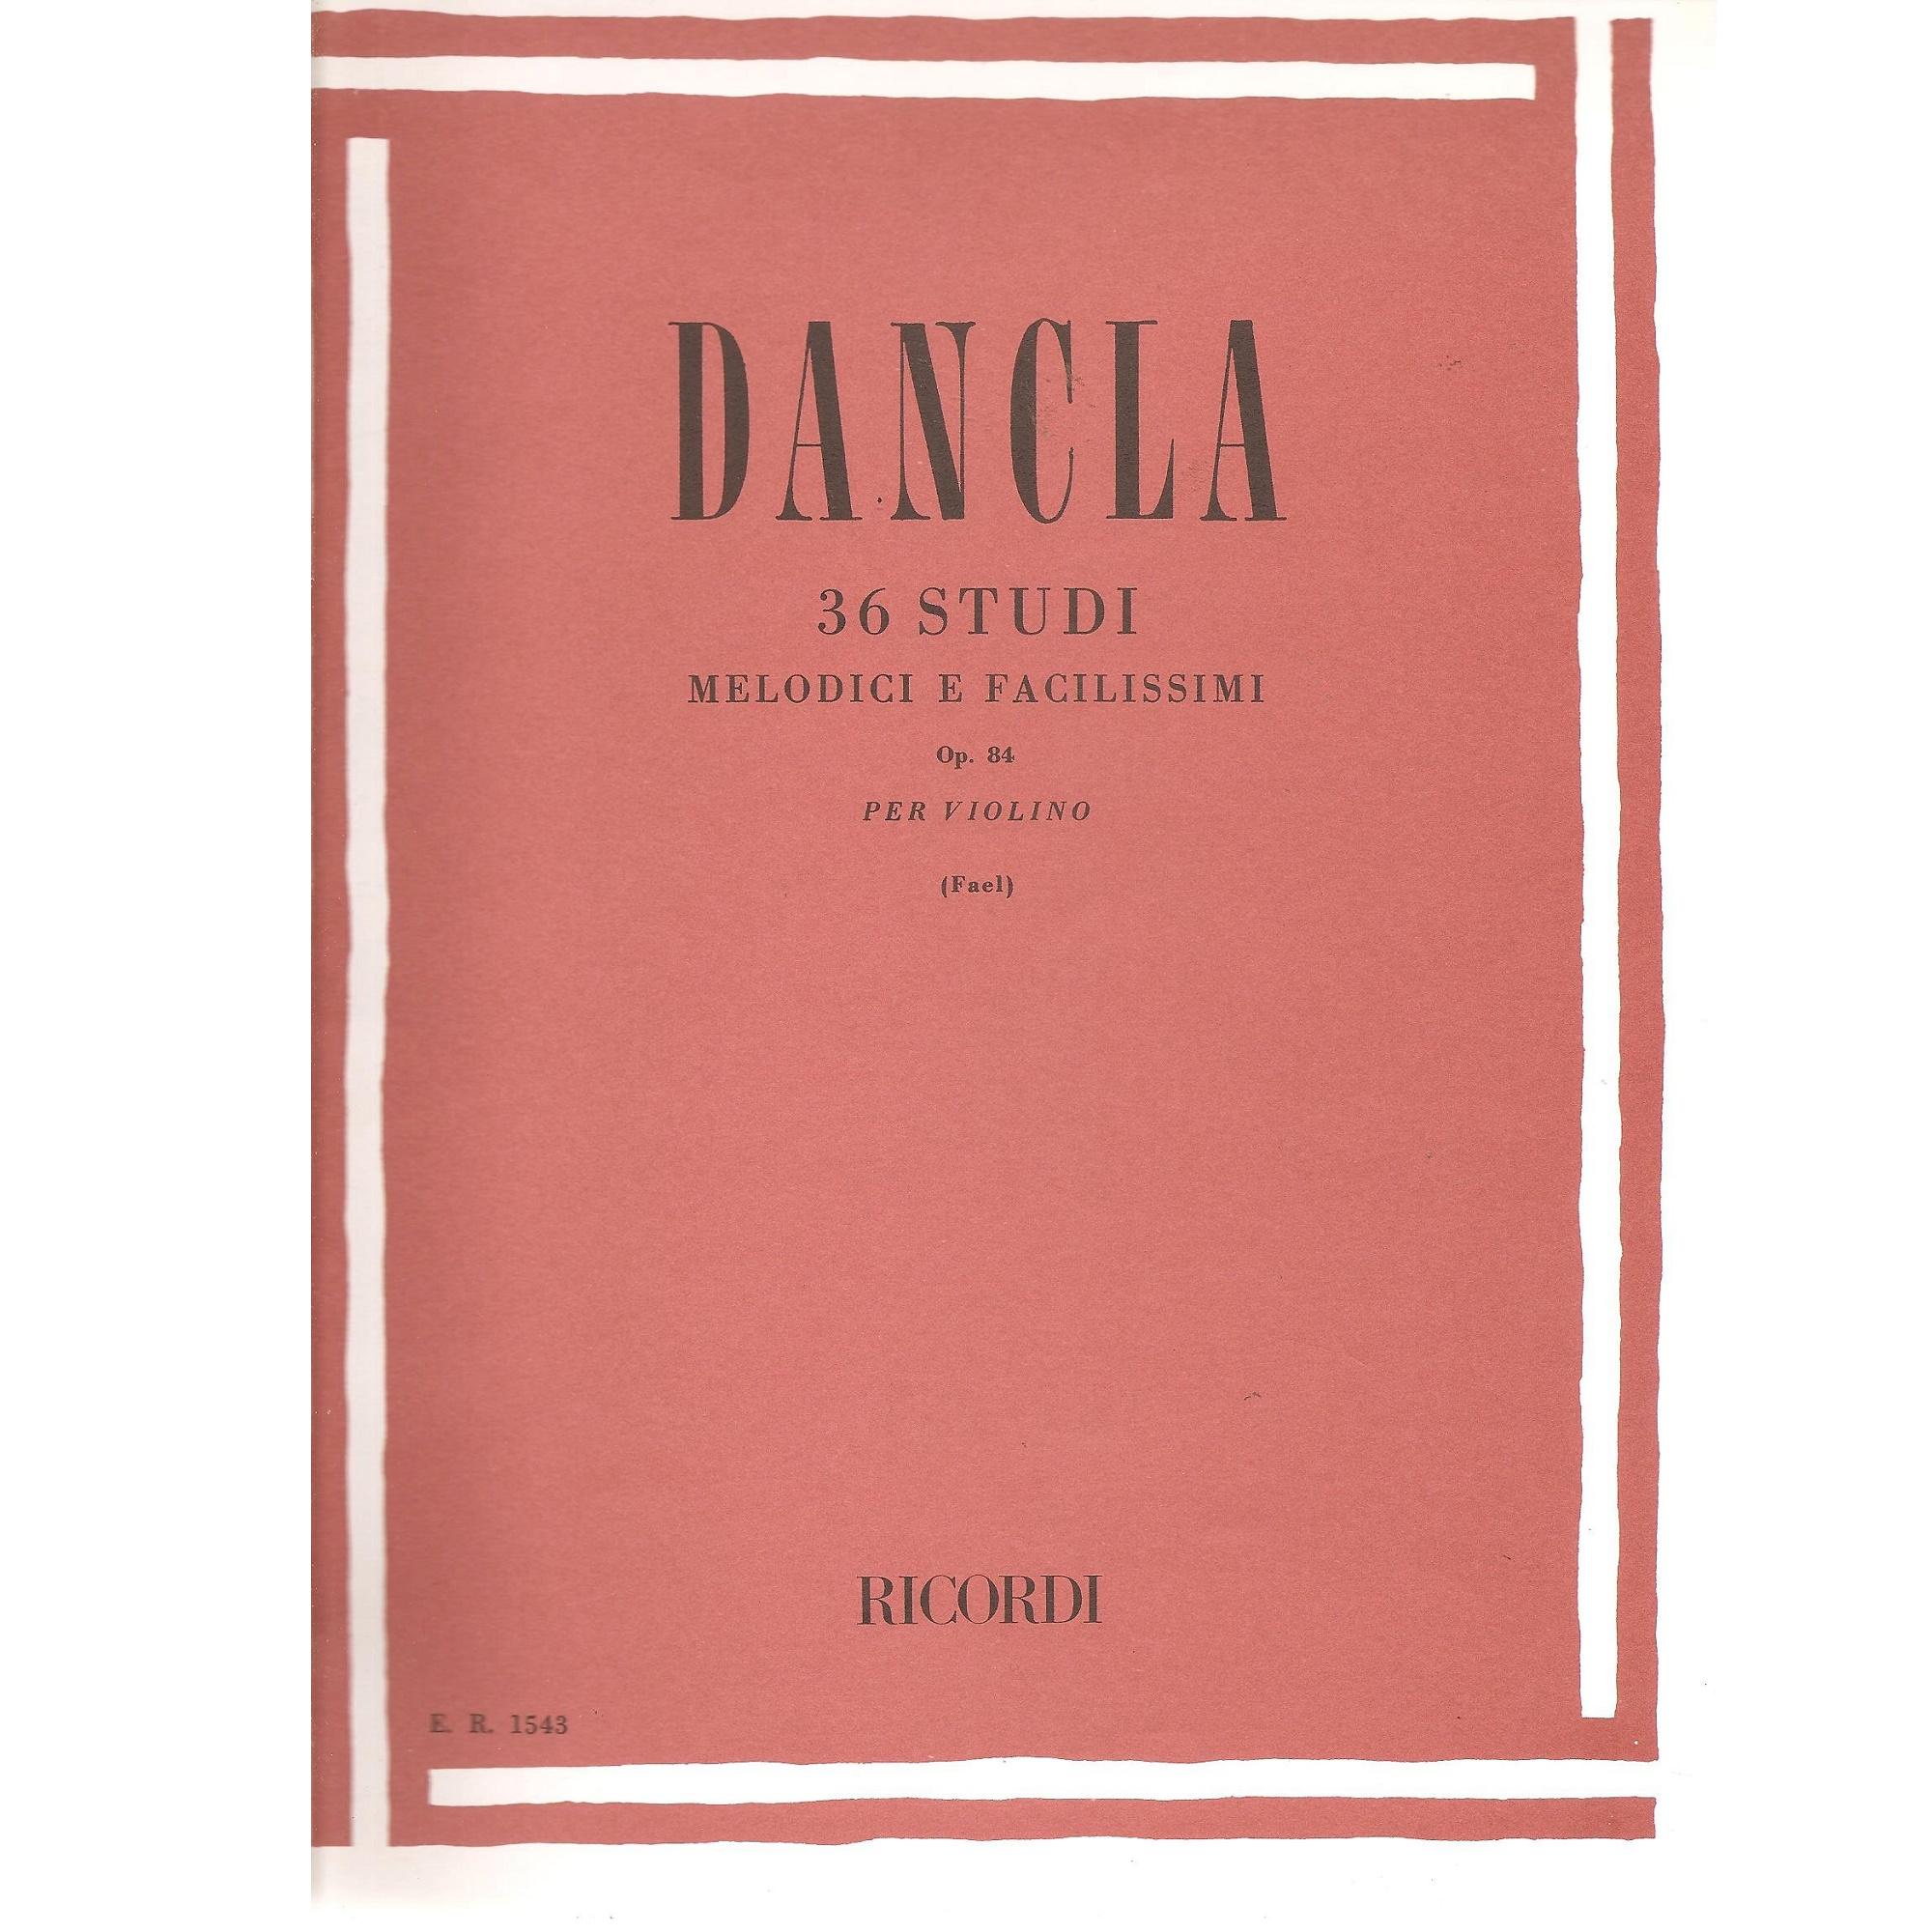 Dancla 36 Studi melodici e facilissimi Op. 84 per violino (Fael) - Ricordi